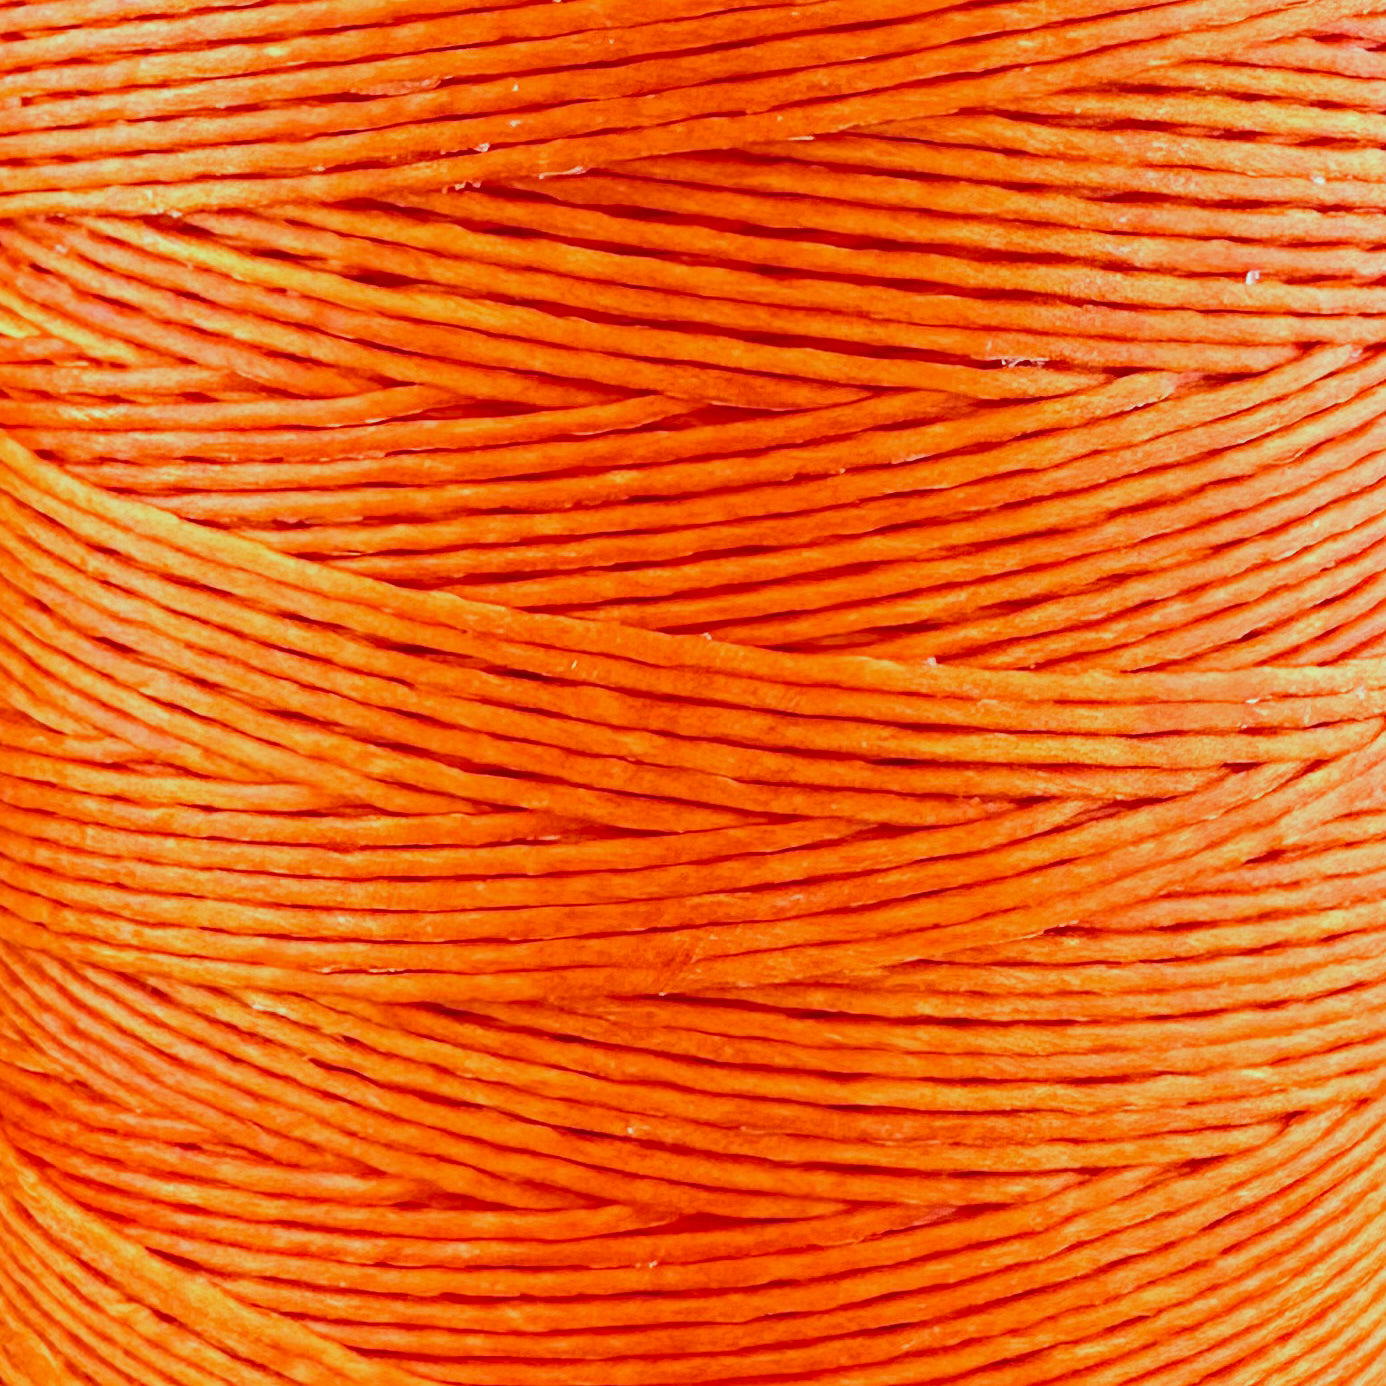 600 Meter Macrame Cord Spool - Orange